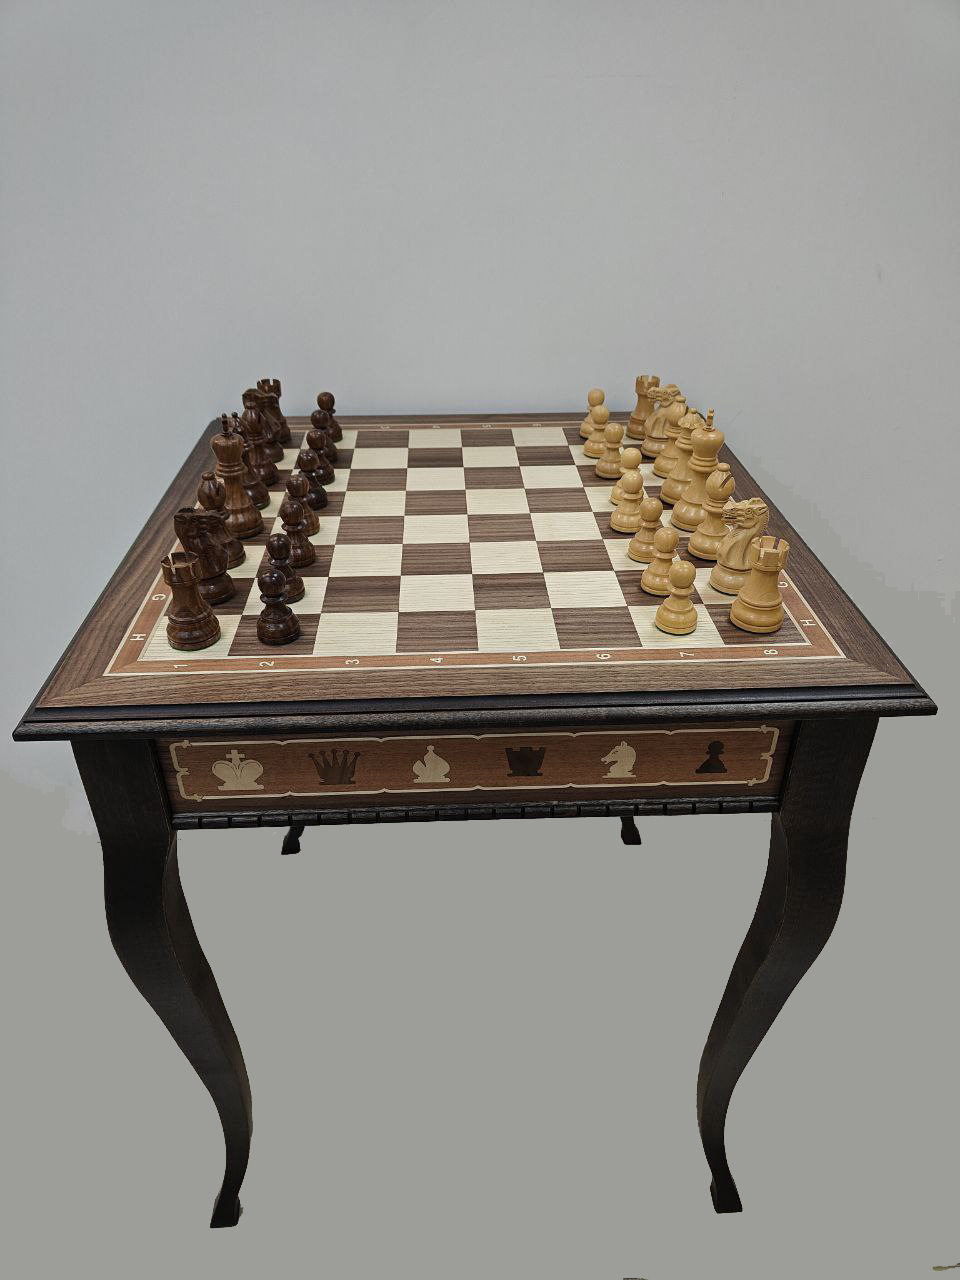 Шахматный стол Lavochkashop подарочный с фигурами из самшита и палисандра